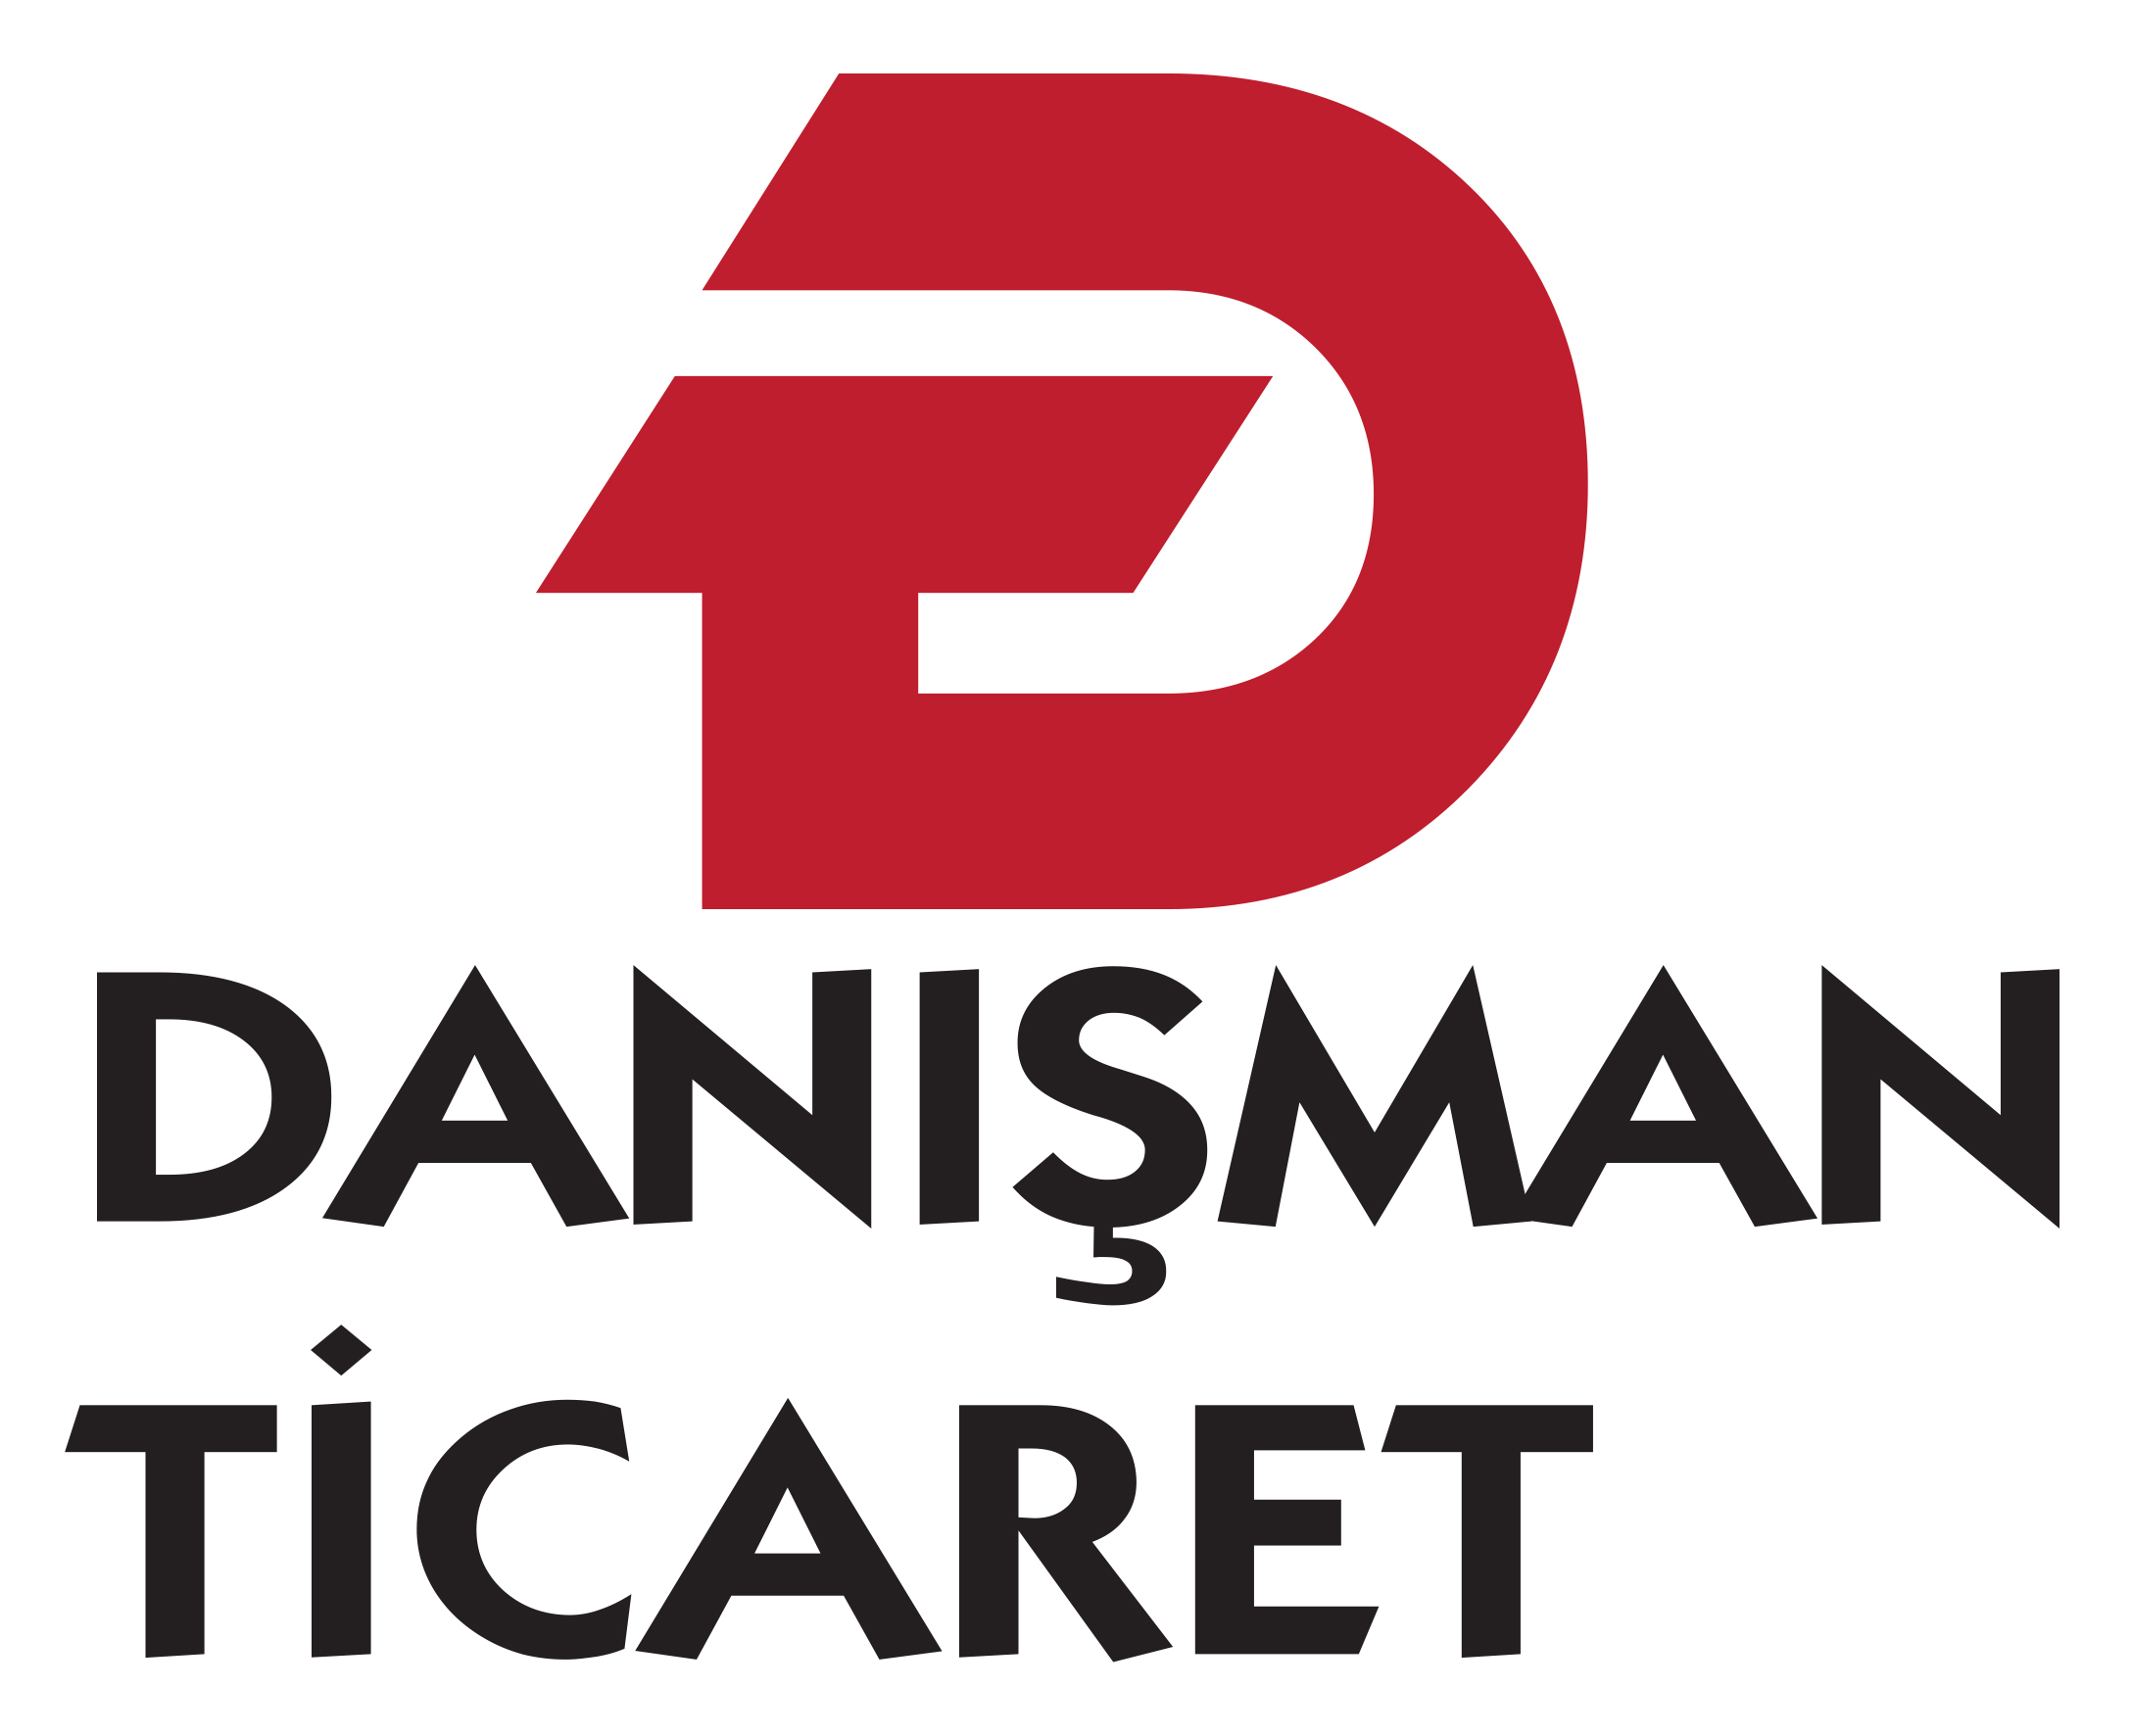 Danisman-Ticaret